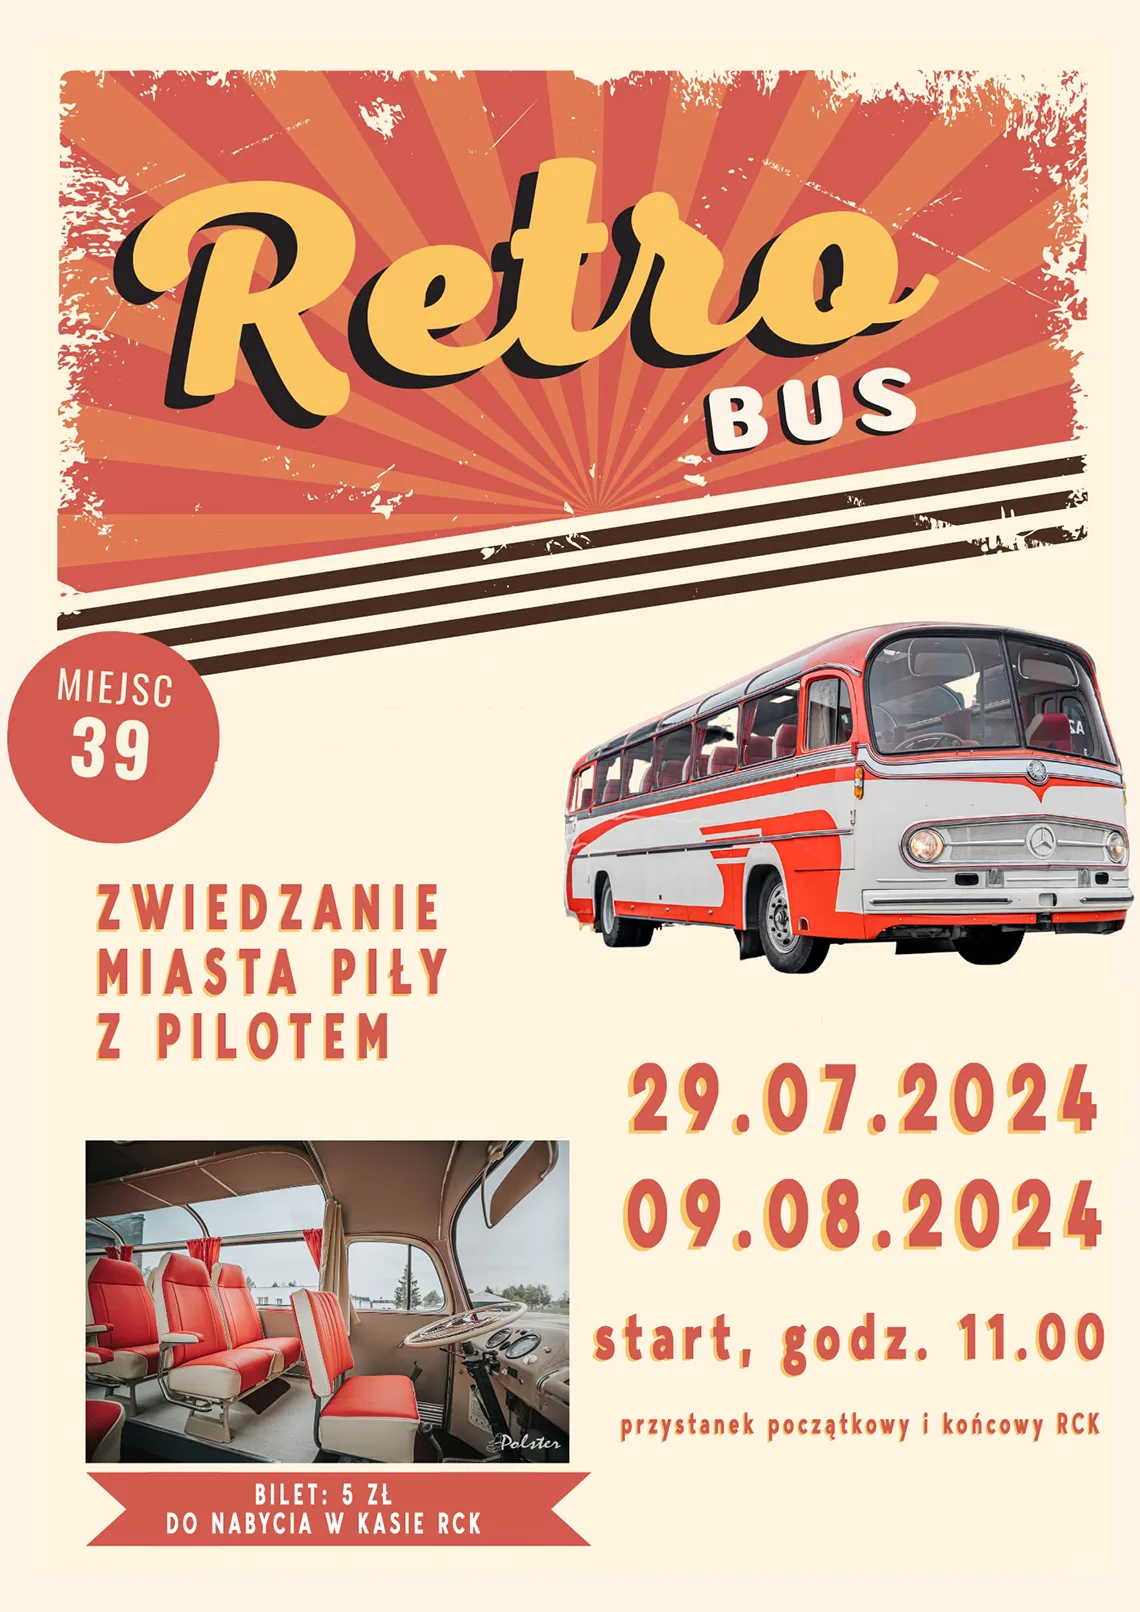 Retro bus